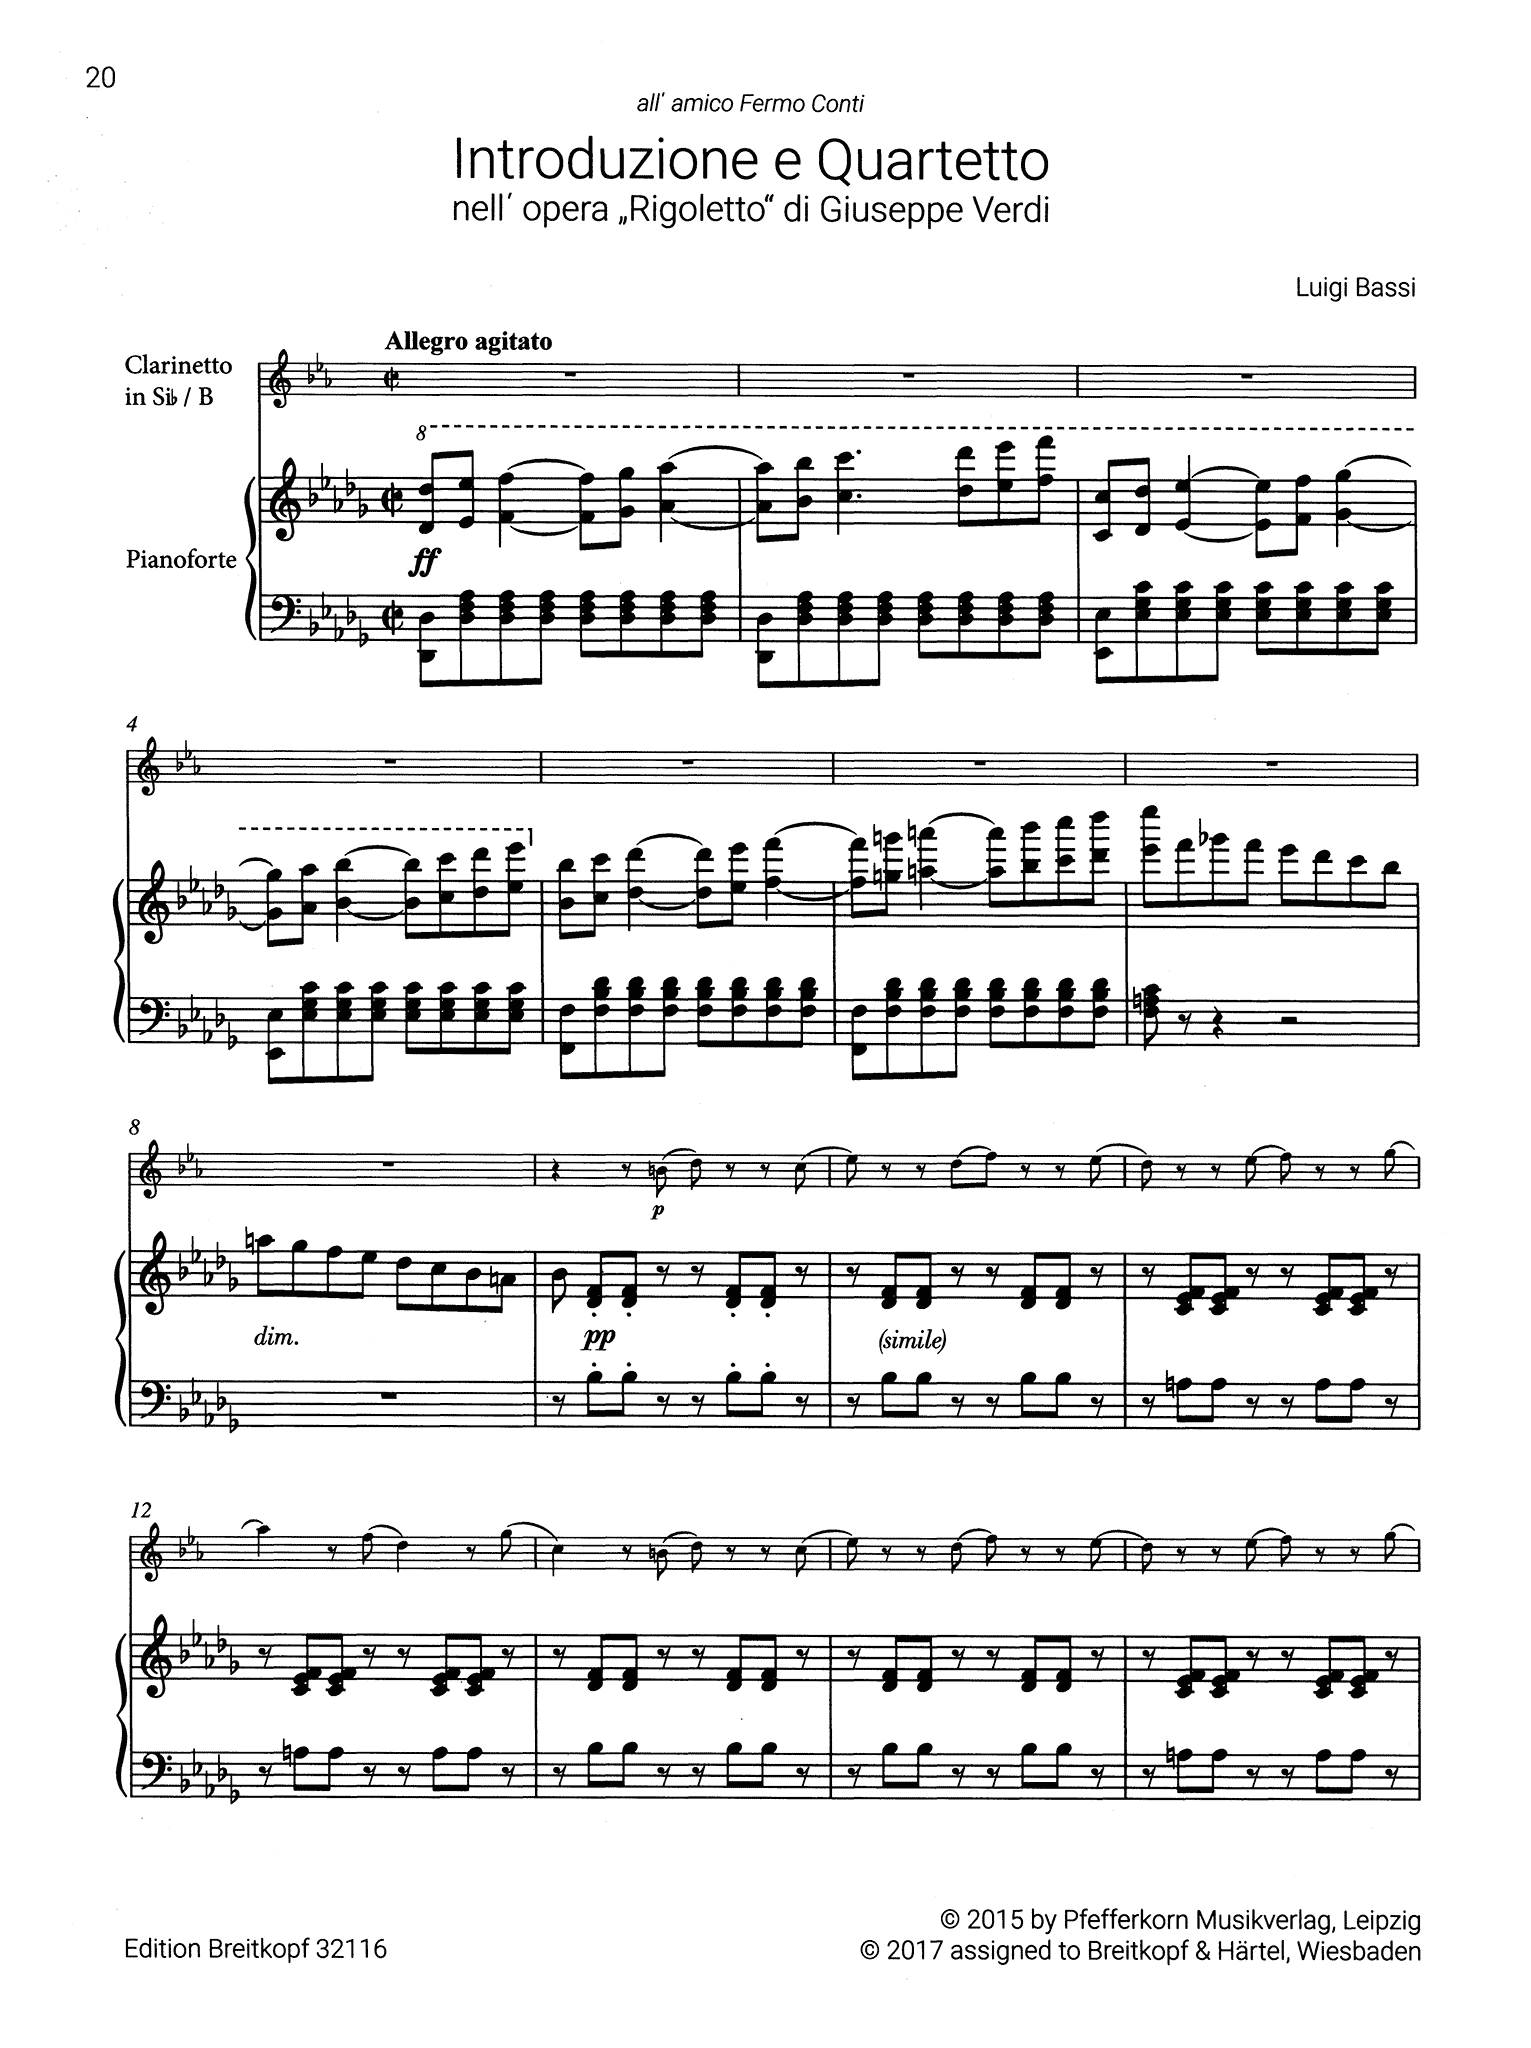 Bassi Introduction and Quartet Score